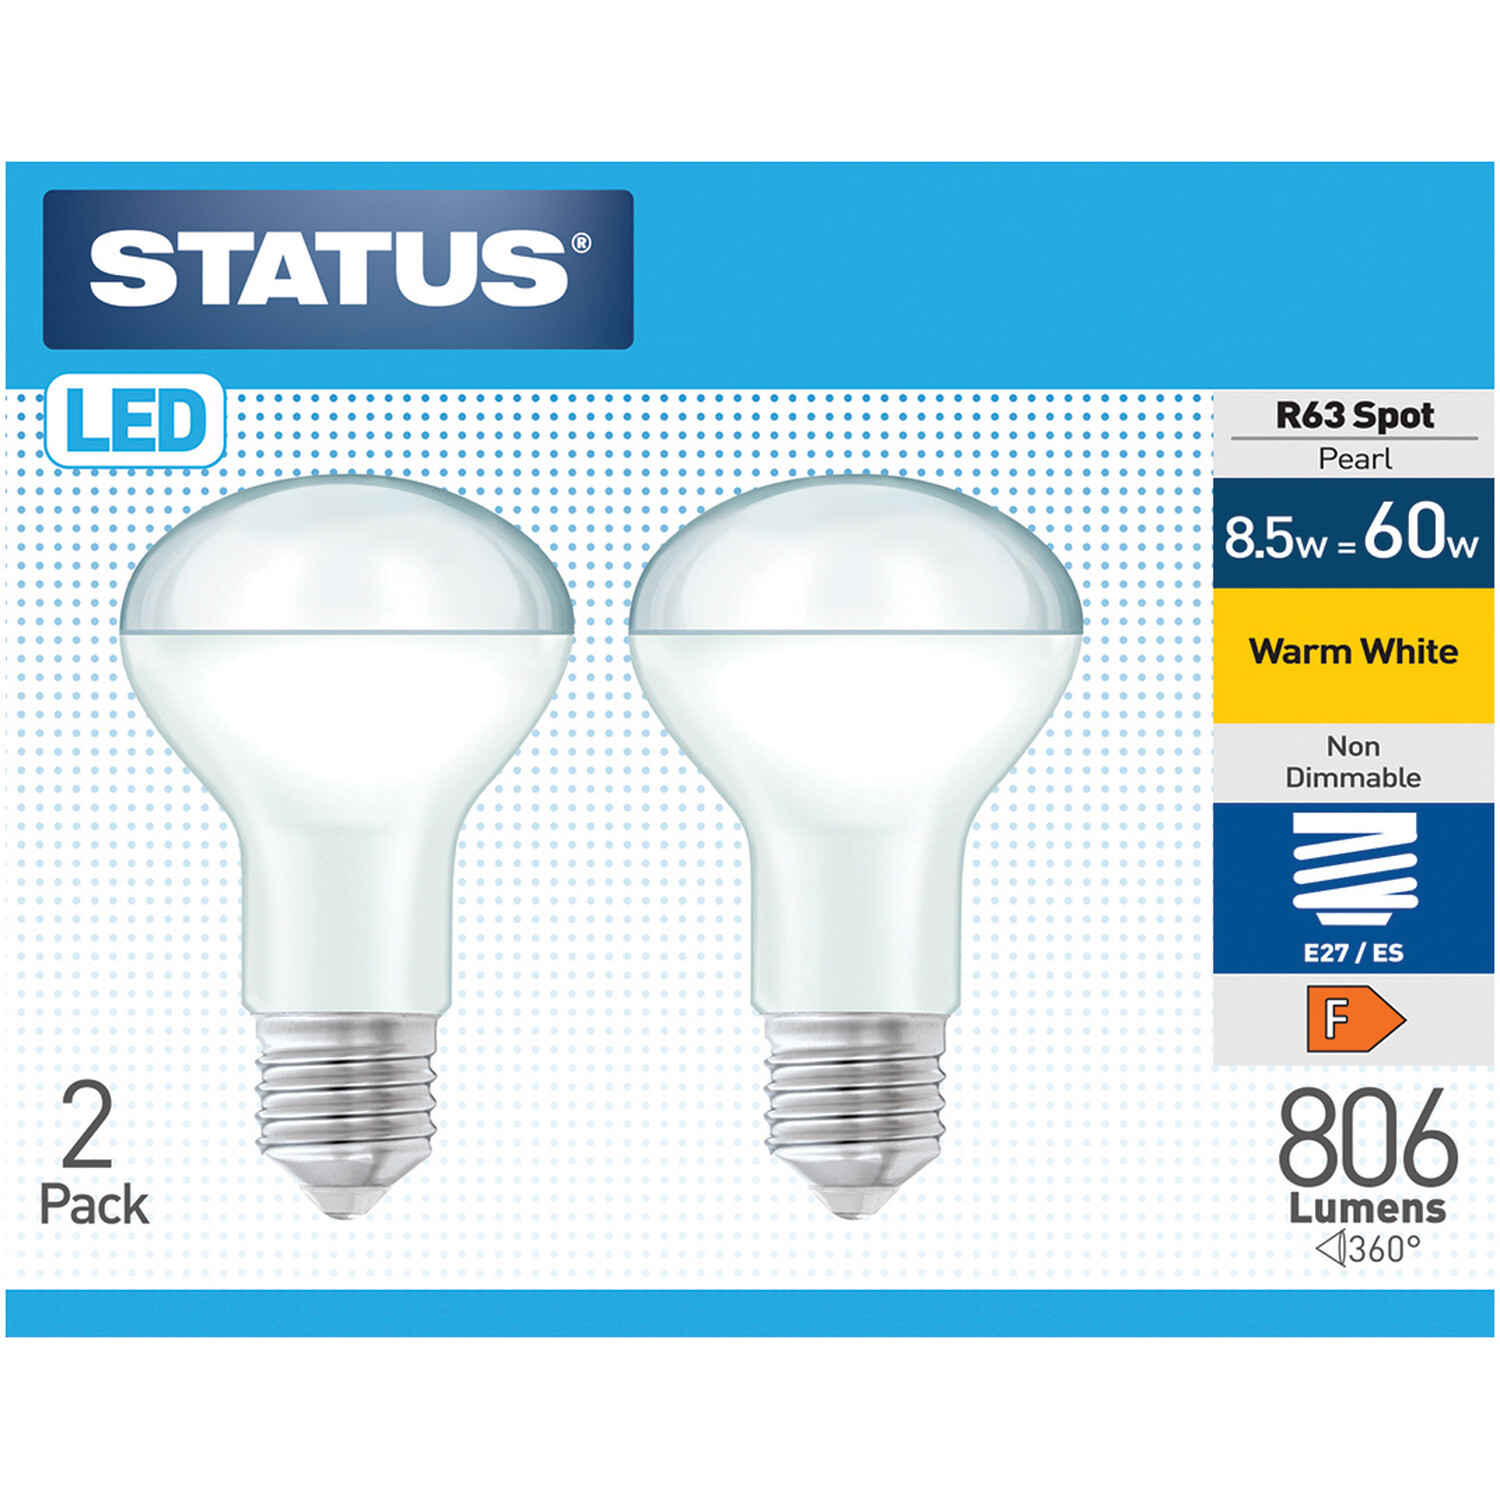 Pack of 2 Status LED 8.5W R63 Spot Lightbulbs Image 1